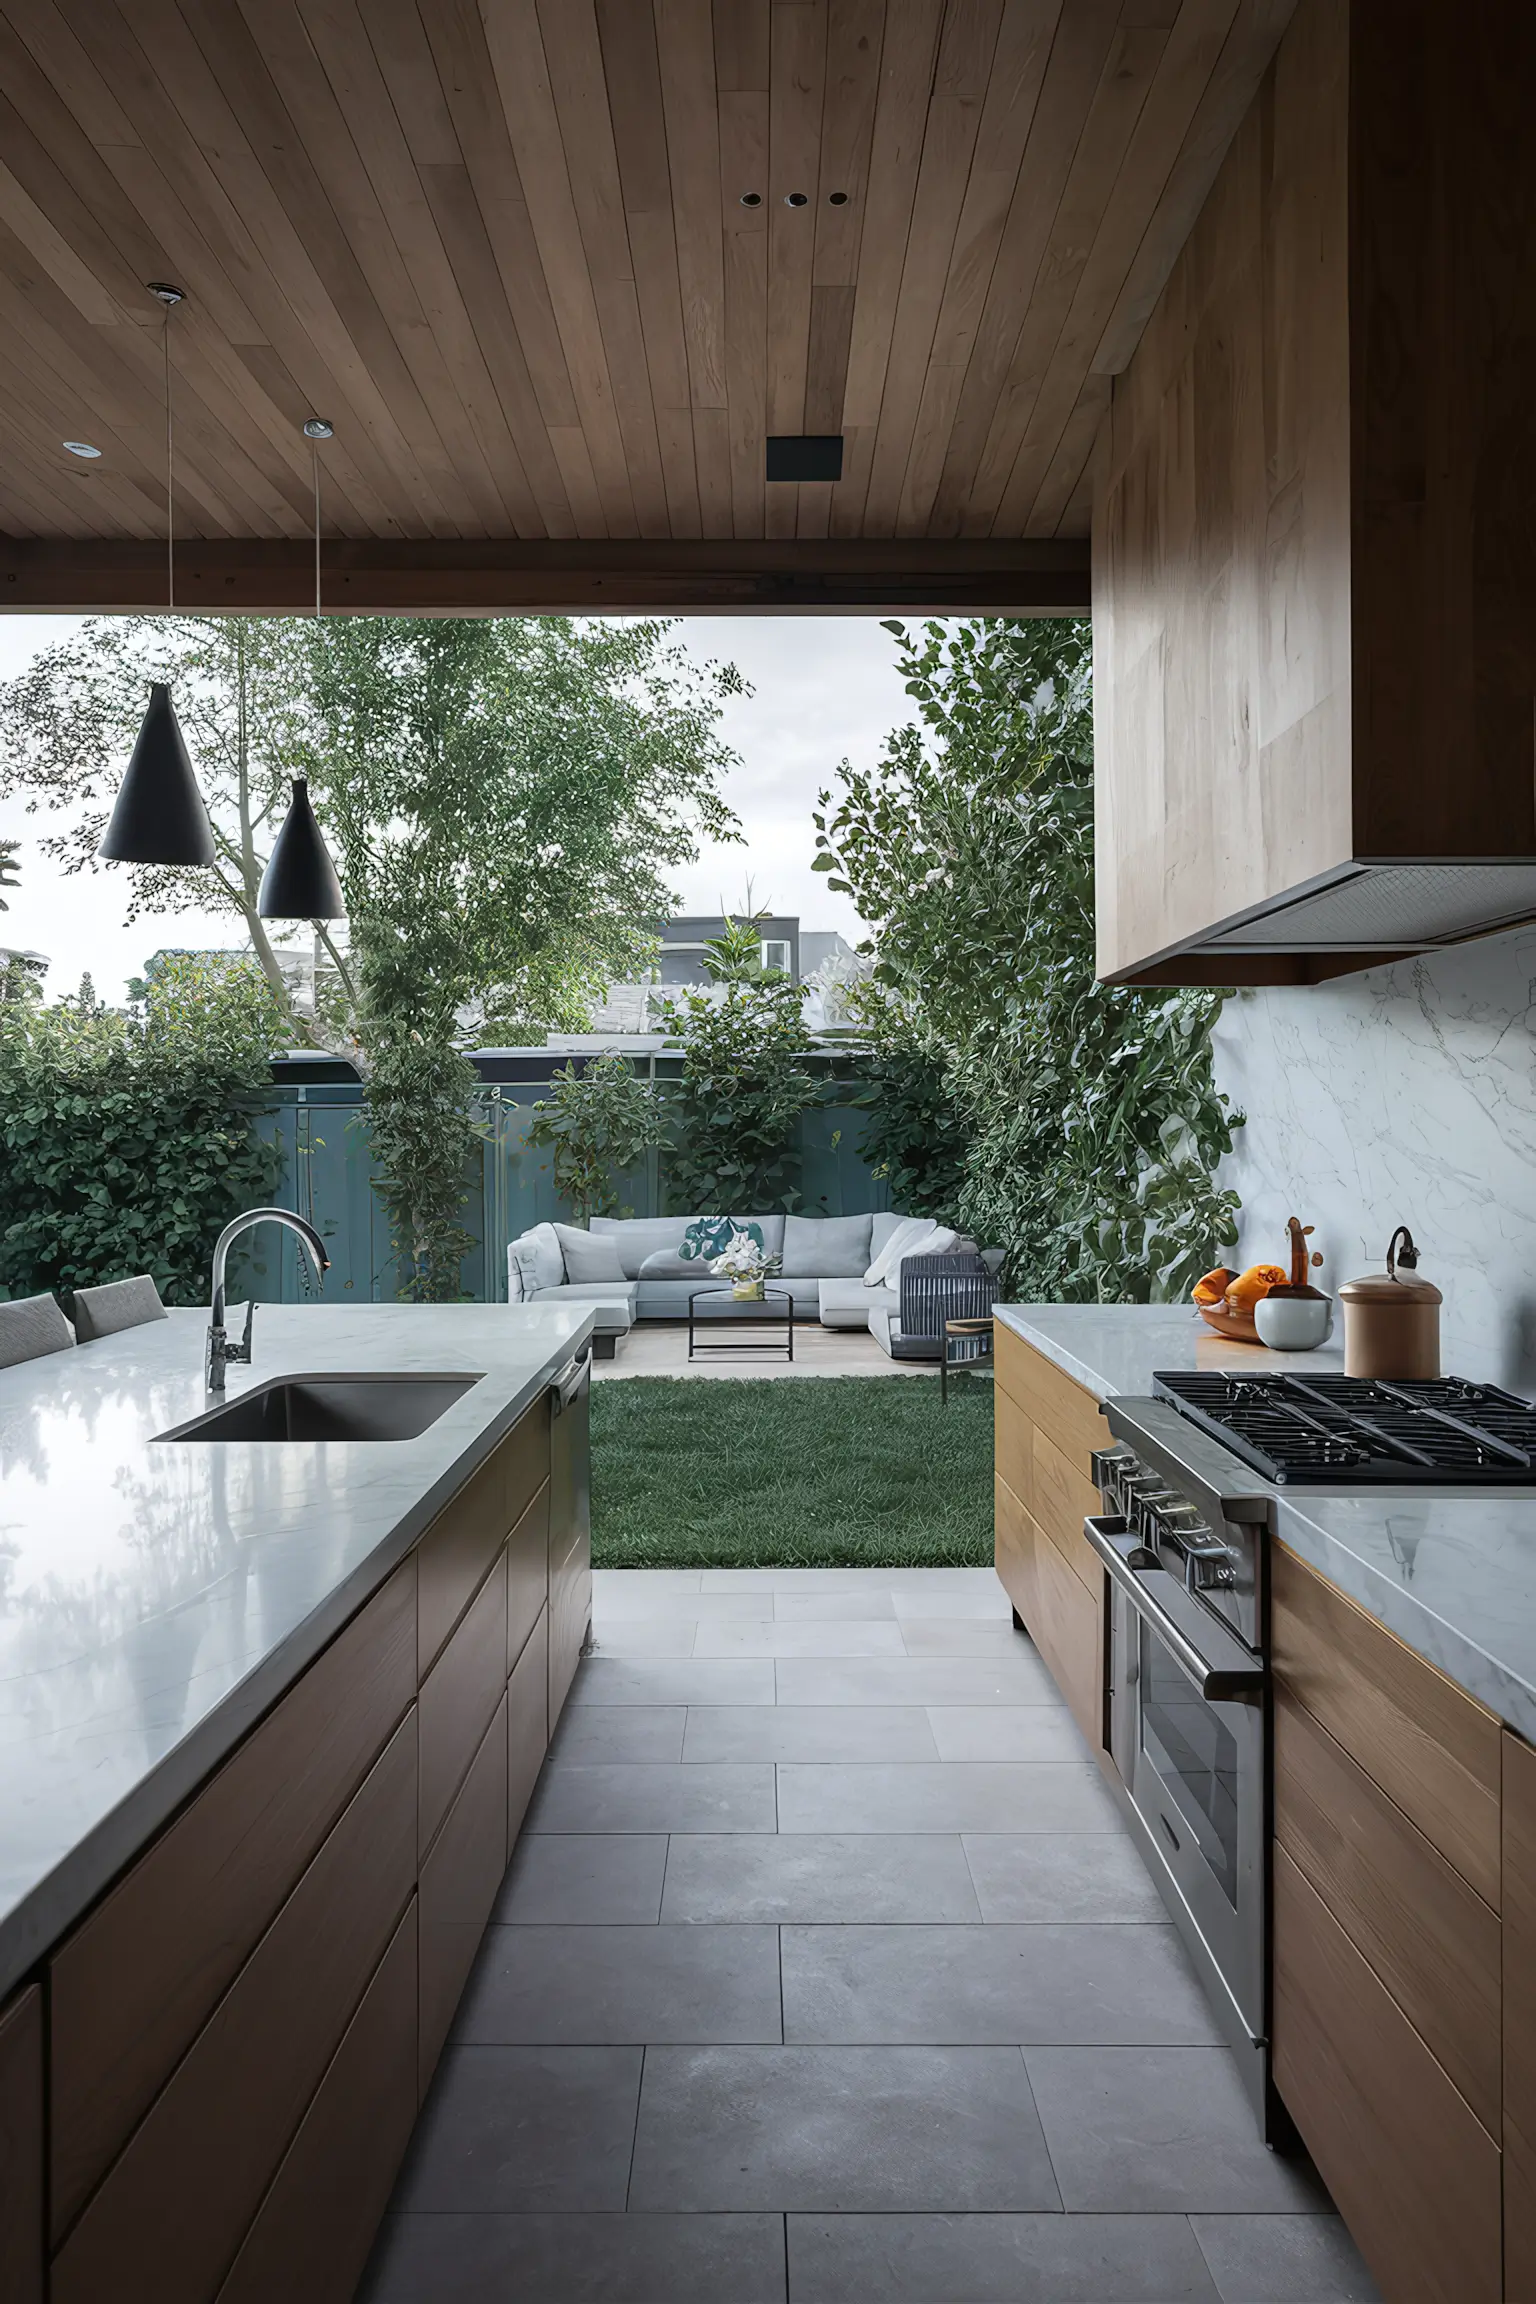 Backyard kitchen with sleek marble countertops.